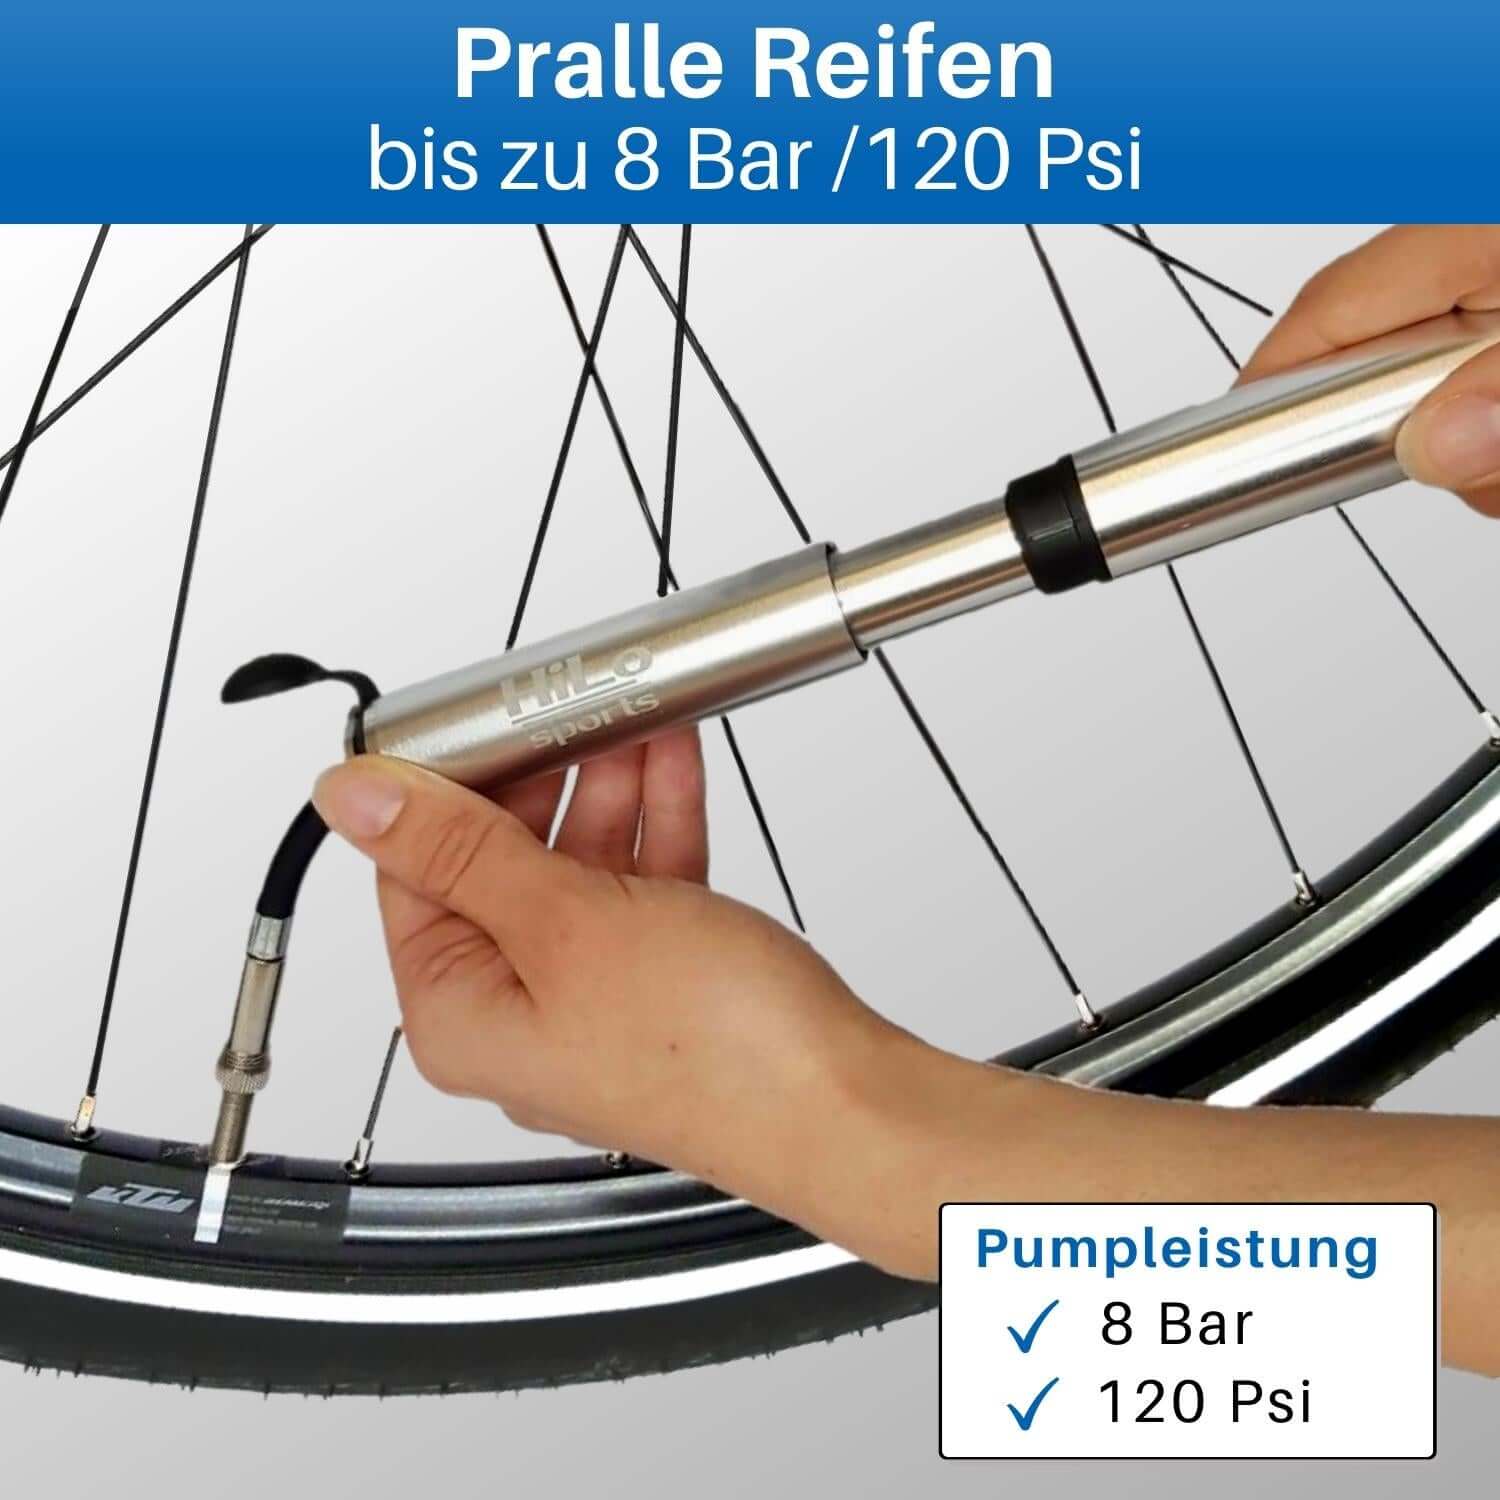 Die Fahrrad Handpumpe klein ist extra langlebig, da sie aus Aluminium Material gefertigt ist.